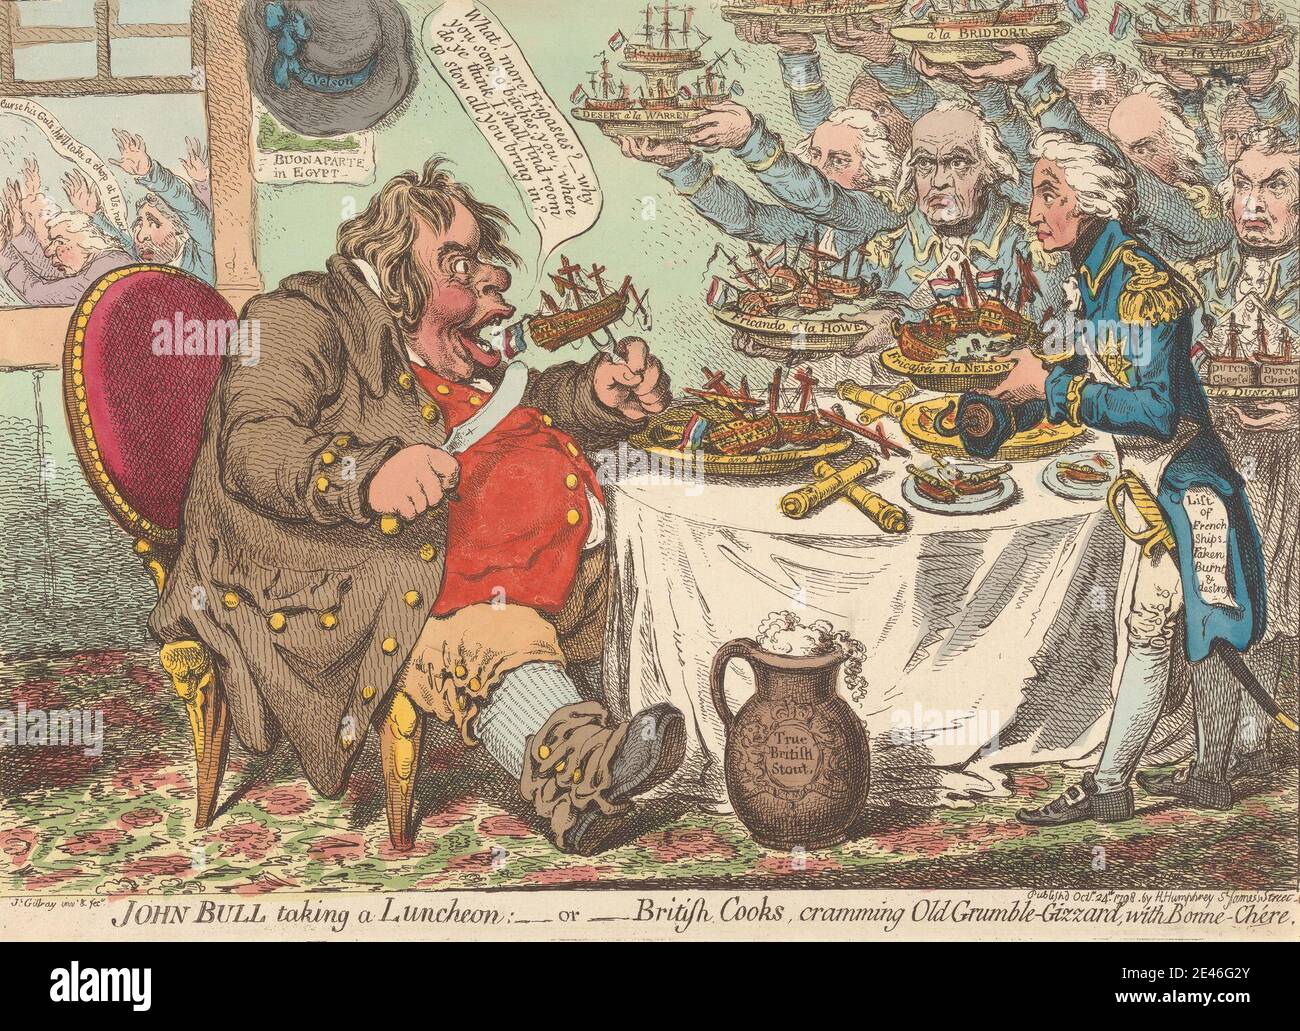 James Gillray, 1757â € "1815, Briten, John Bull, die ein Mittagessen; - oder - britische Köche, Cramming Old Grumble-Gizzard mit Bonne-Chere (aus: Karikatur, Band 1), 1798. Ätzung, handgefärbt. Abendessen, Essen, Mahlzeit Stockfoto